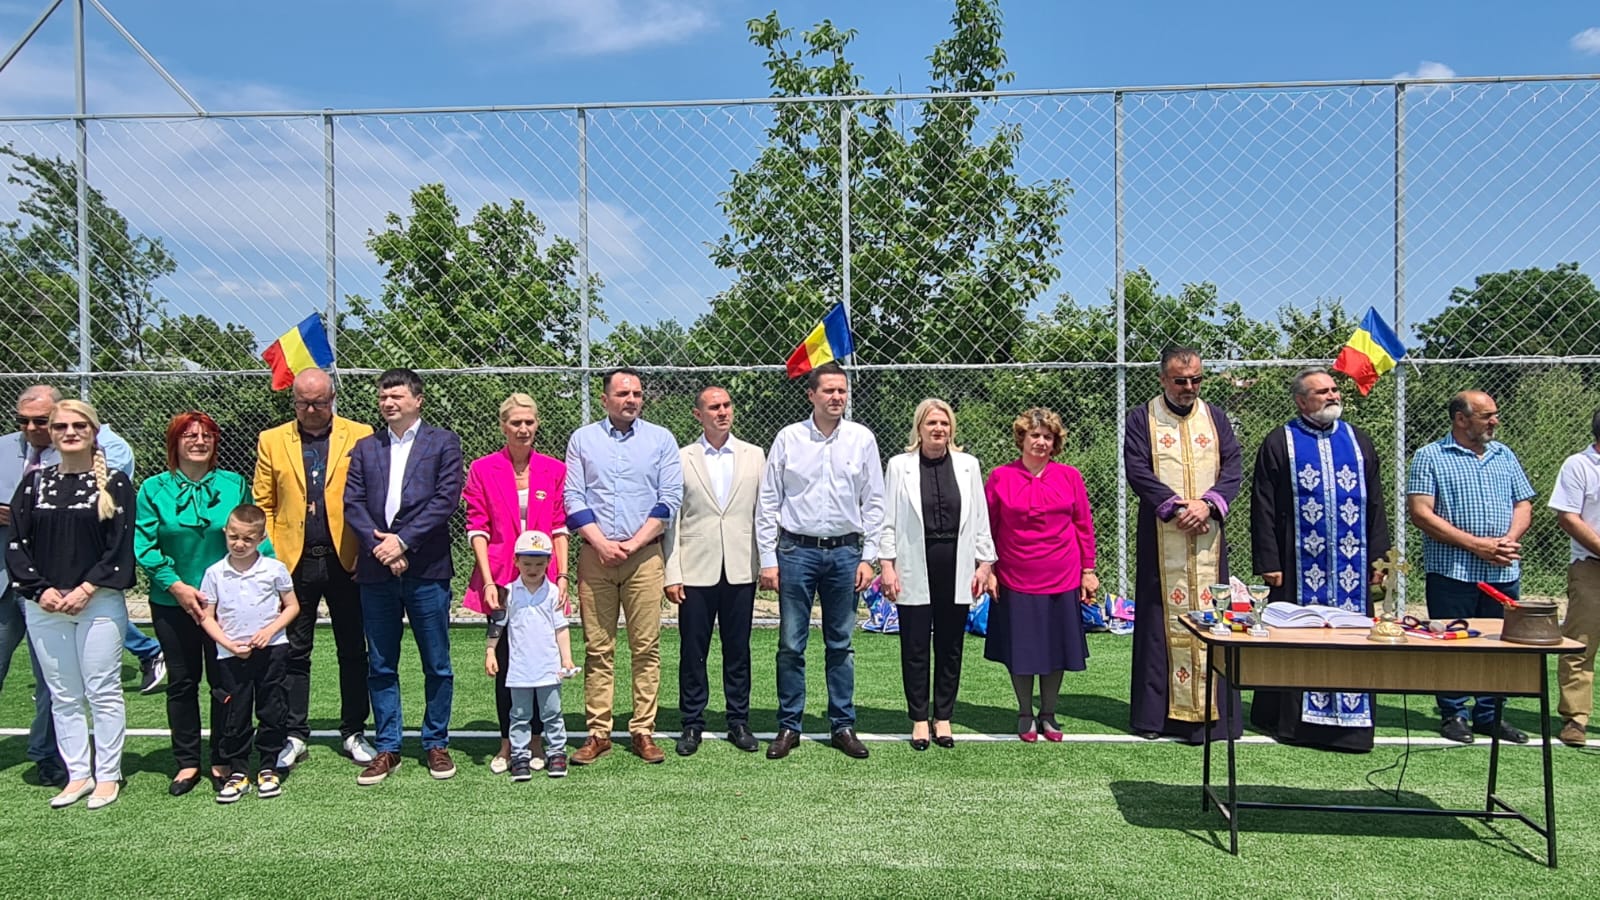 Teren multisport, realizat cu sprijinul Consiliului Județean Dâmbovița, prin PJDL, inaugurat în satul Mărcești din comuna Dobra. VIDEO